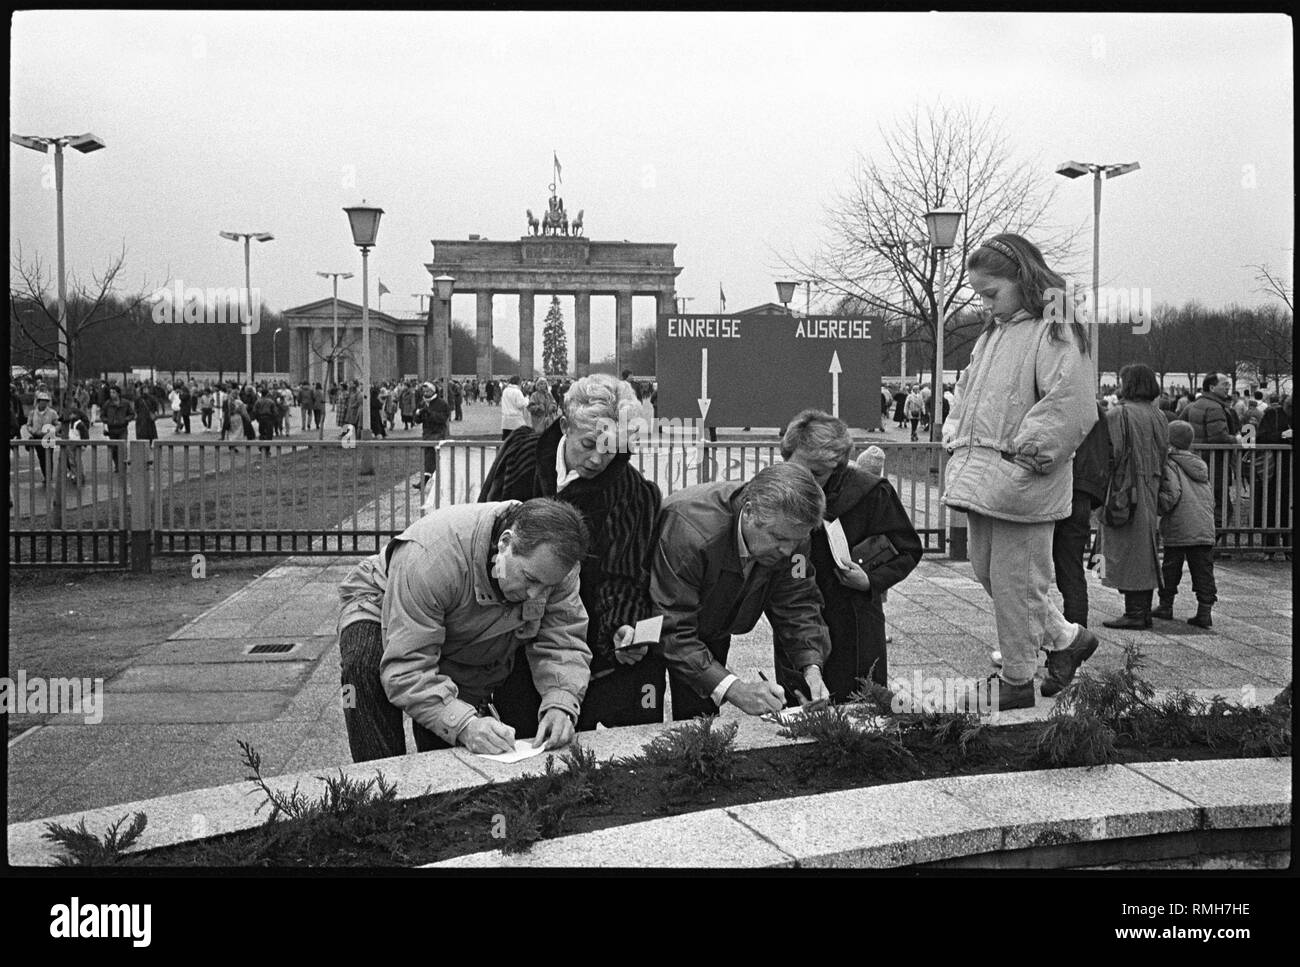 Dal 24 dicembre 1989, West tedeschi potrebbero travel visa-libero tra la RDT e la RFT dopo ardui negoziati di governo. Il minimo obbligo di scambio alla frontiera non era più necessaria. Migliaia di Berlino ai residenti e ai visitatori di utilizzare il nuovo regolamento di prendere un viaggio natalizio alla Porta di Brandeburgo. Il Pariser Platz è stato aperto al pubblico per la prima volta poiché il muro è stato costruito nel 1961. Qui i visitatori ad ovest sono la compilazione del cosiddetto Zaehlkarten, che sono ancora richiesti dalla RDT competenti ai fini del controllo. Foto Stock